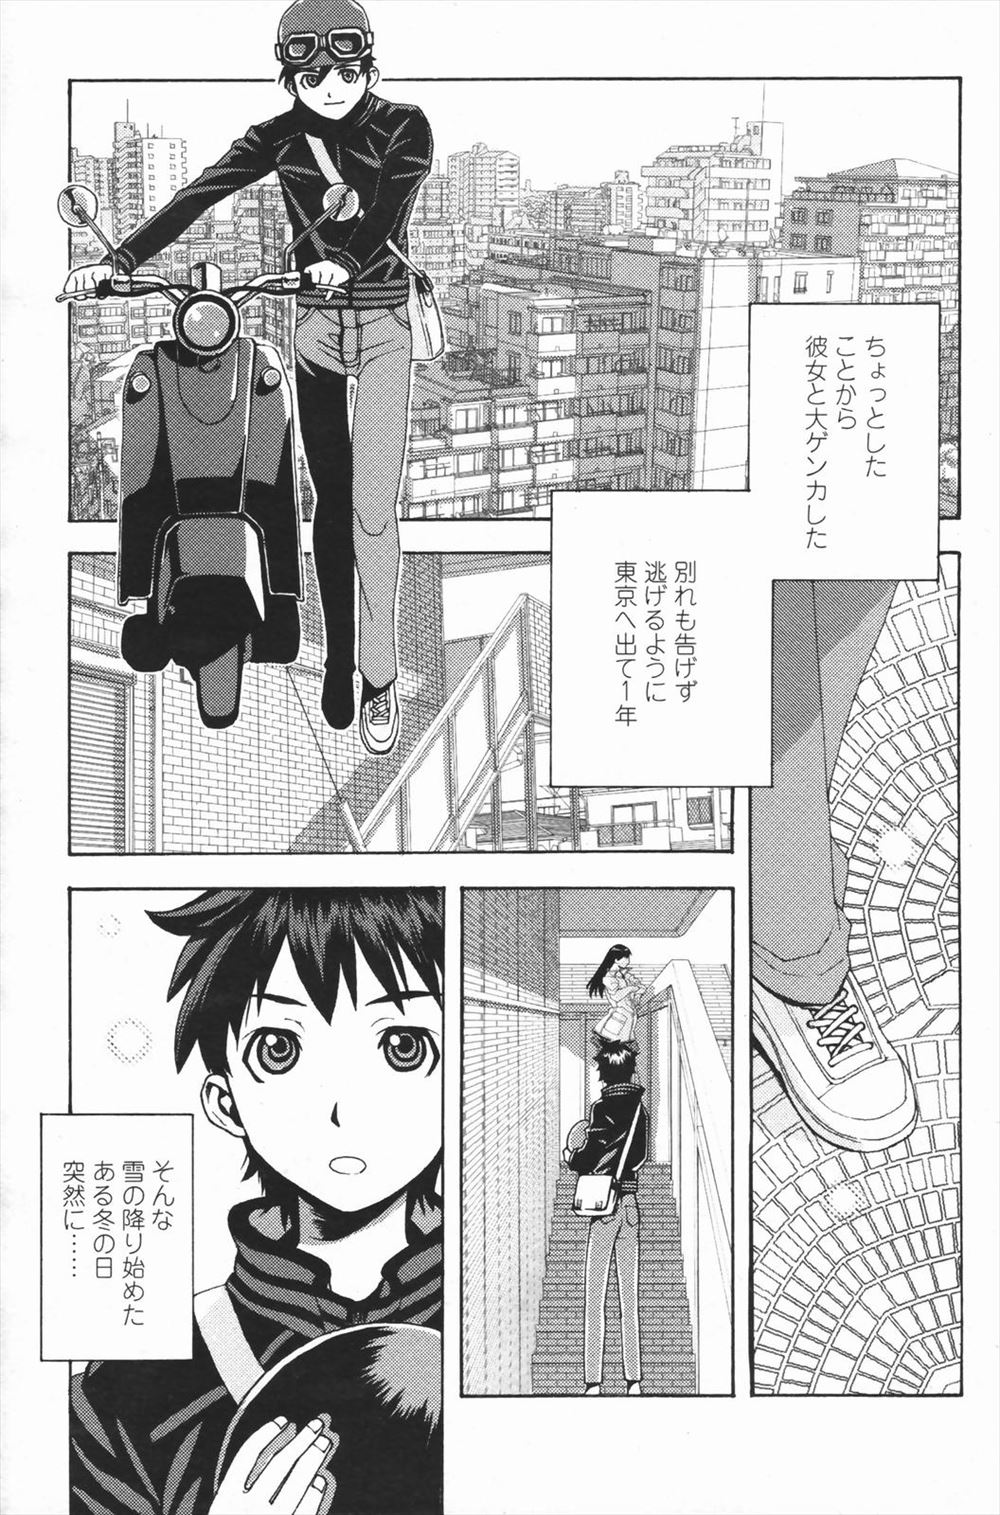 【エロ漫画】彼女と大喧嘩をして黙って東京に行ってしまった男の自宅の前に彼女が現れて、仲直りのイチャラブセックスをしてパイパンマンコに中出しをしまくる